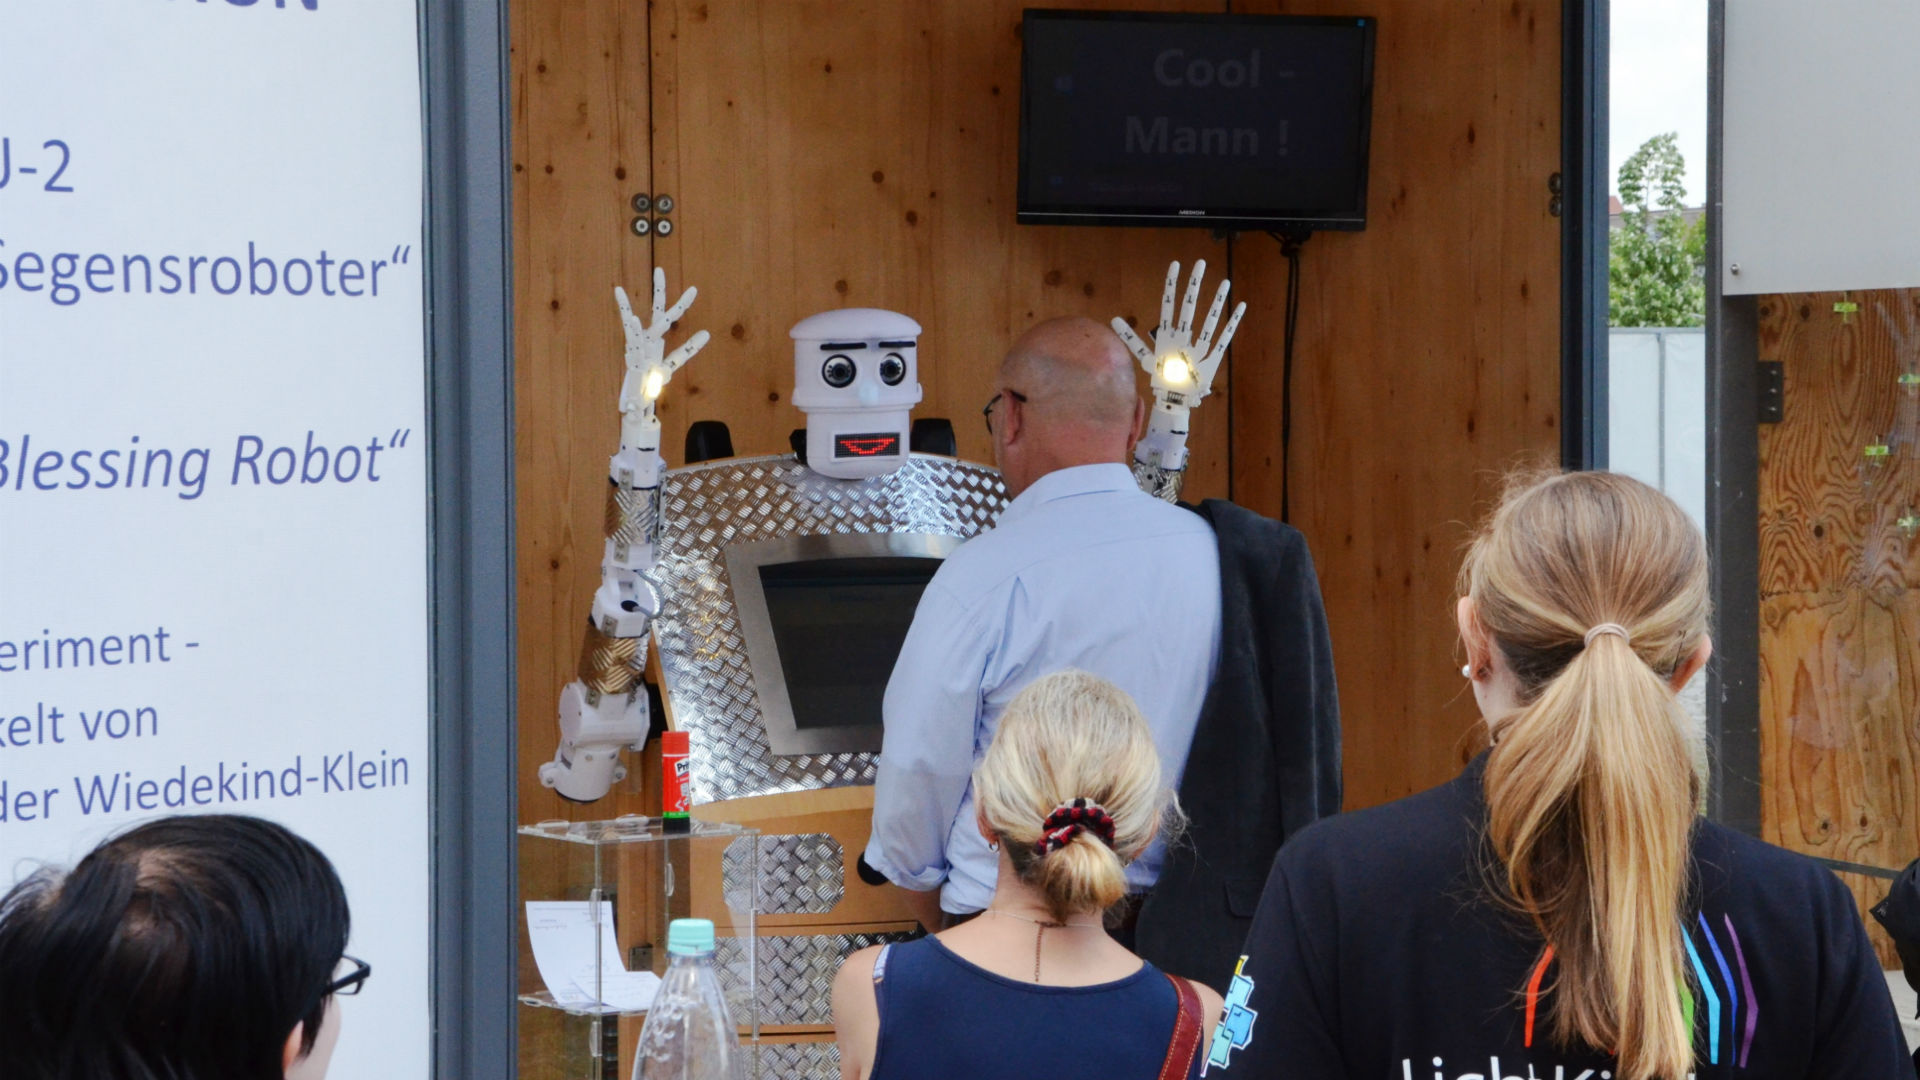 Crean un robot cura que ofrece bendiciones en 5 idiomas